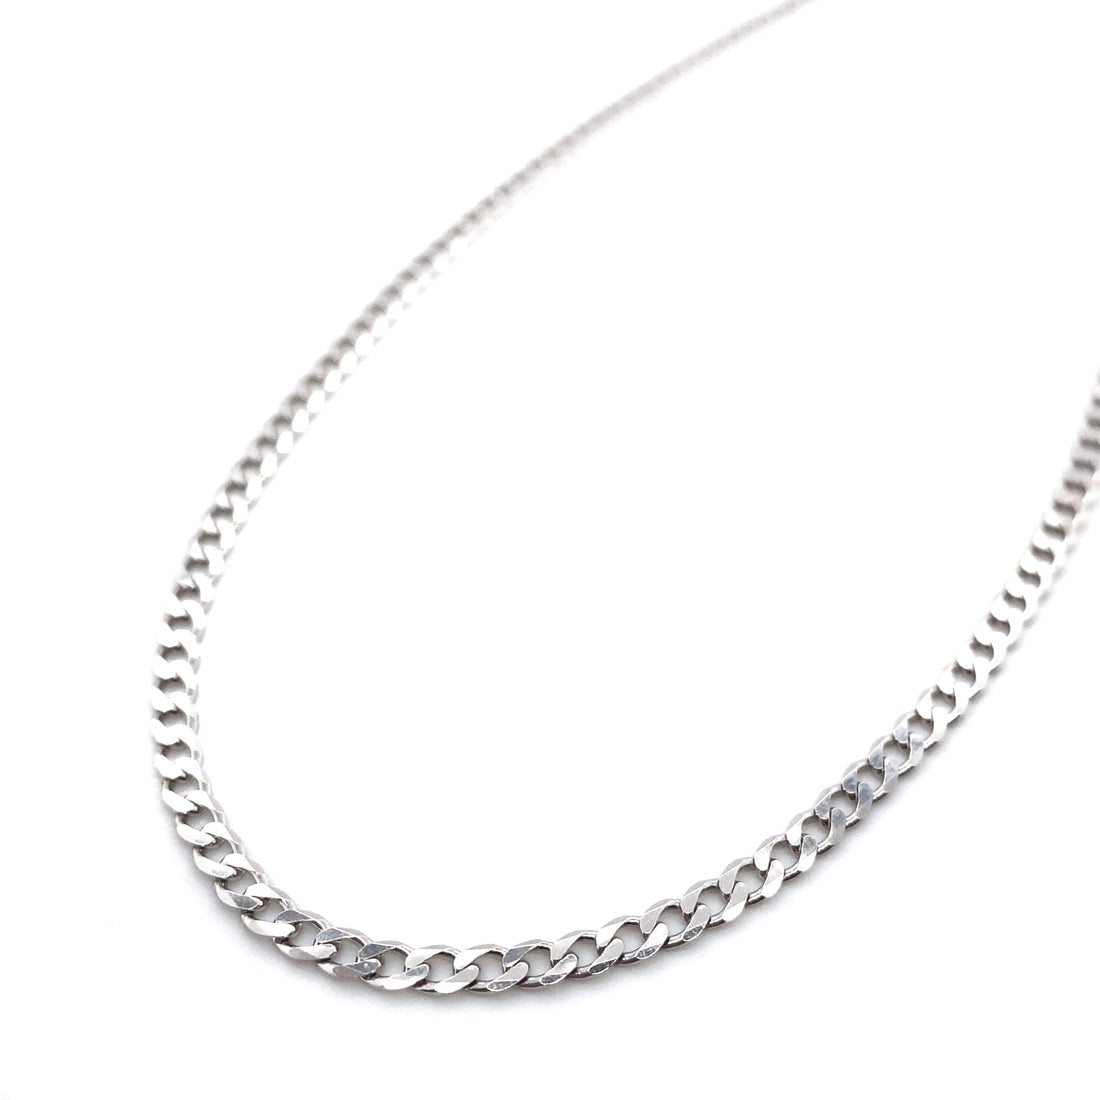 Silver 20" Curb Chain